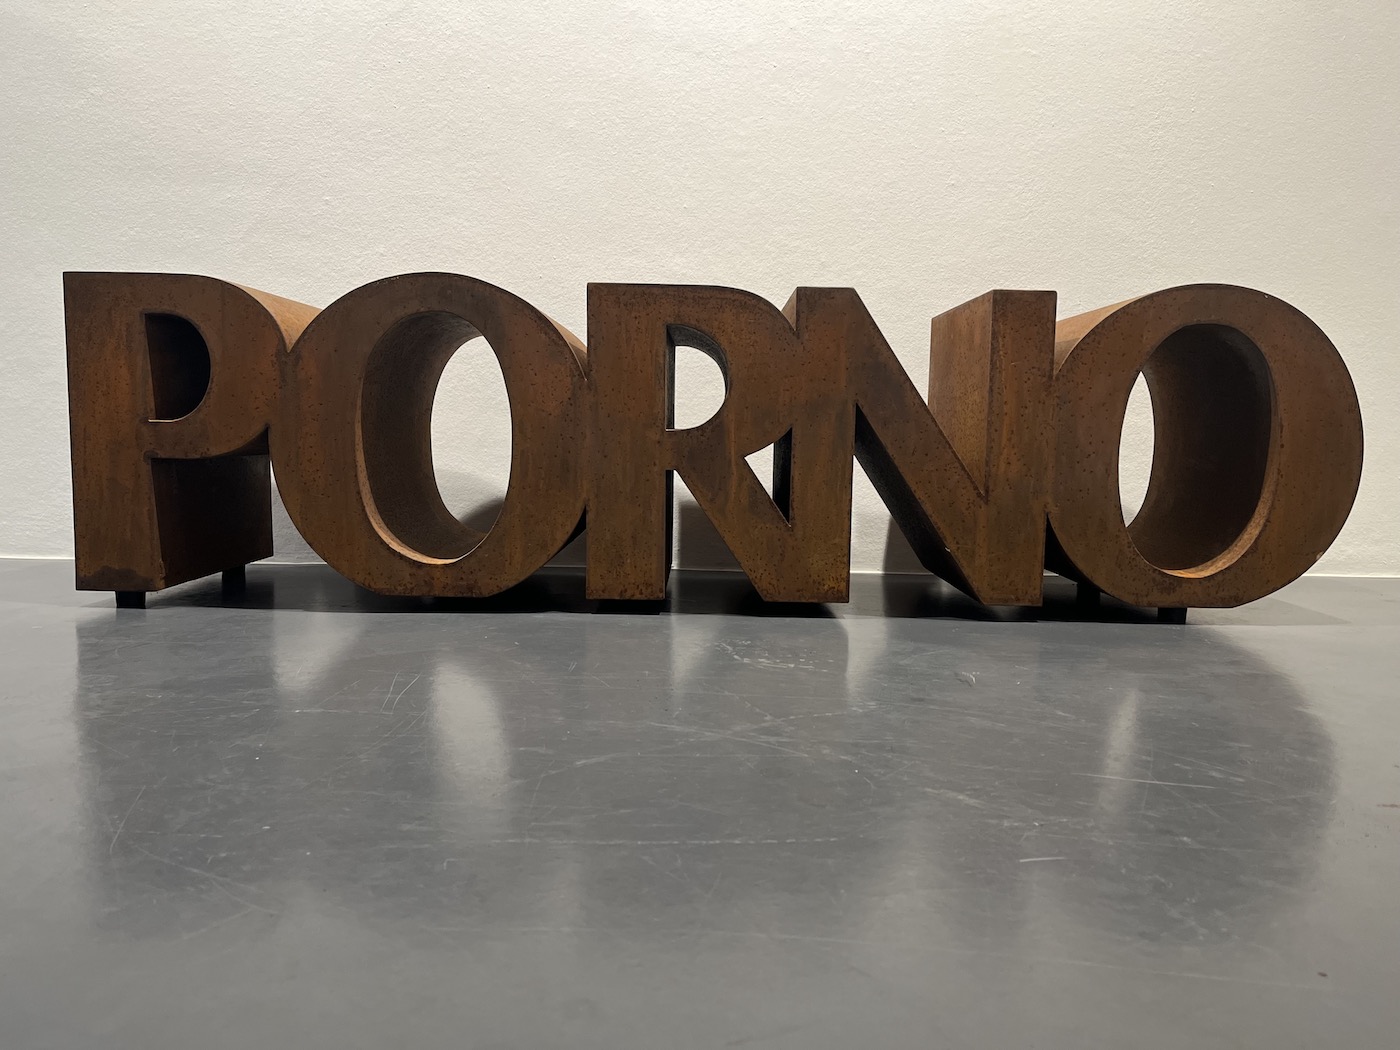 "Porno", mit diesem Kunstwerk aus Cortenstahl trägt er die Essenz seines lyrischen Schaffens in großer Dimension nach außen in die Öffentlichkeit.